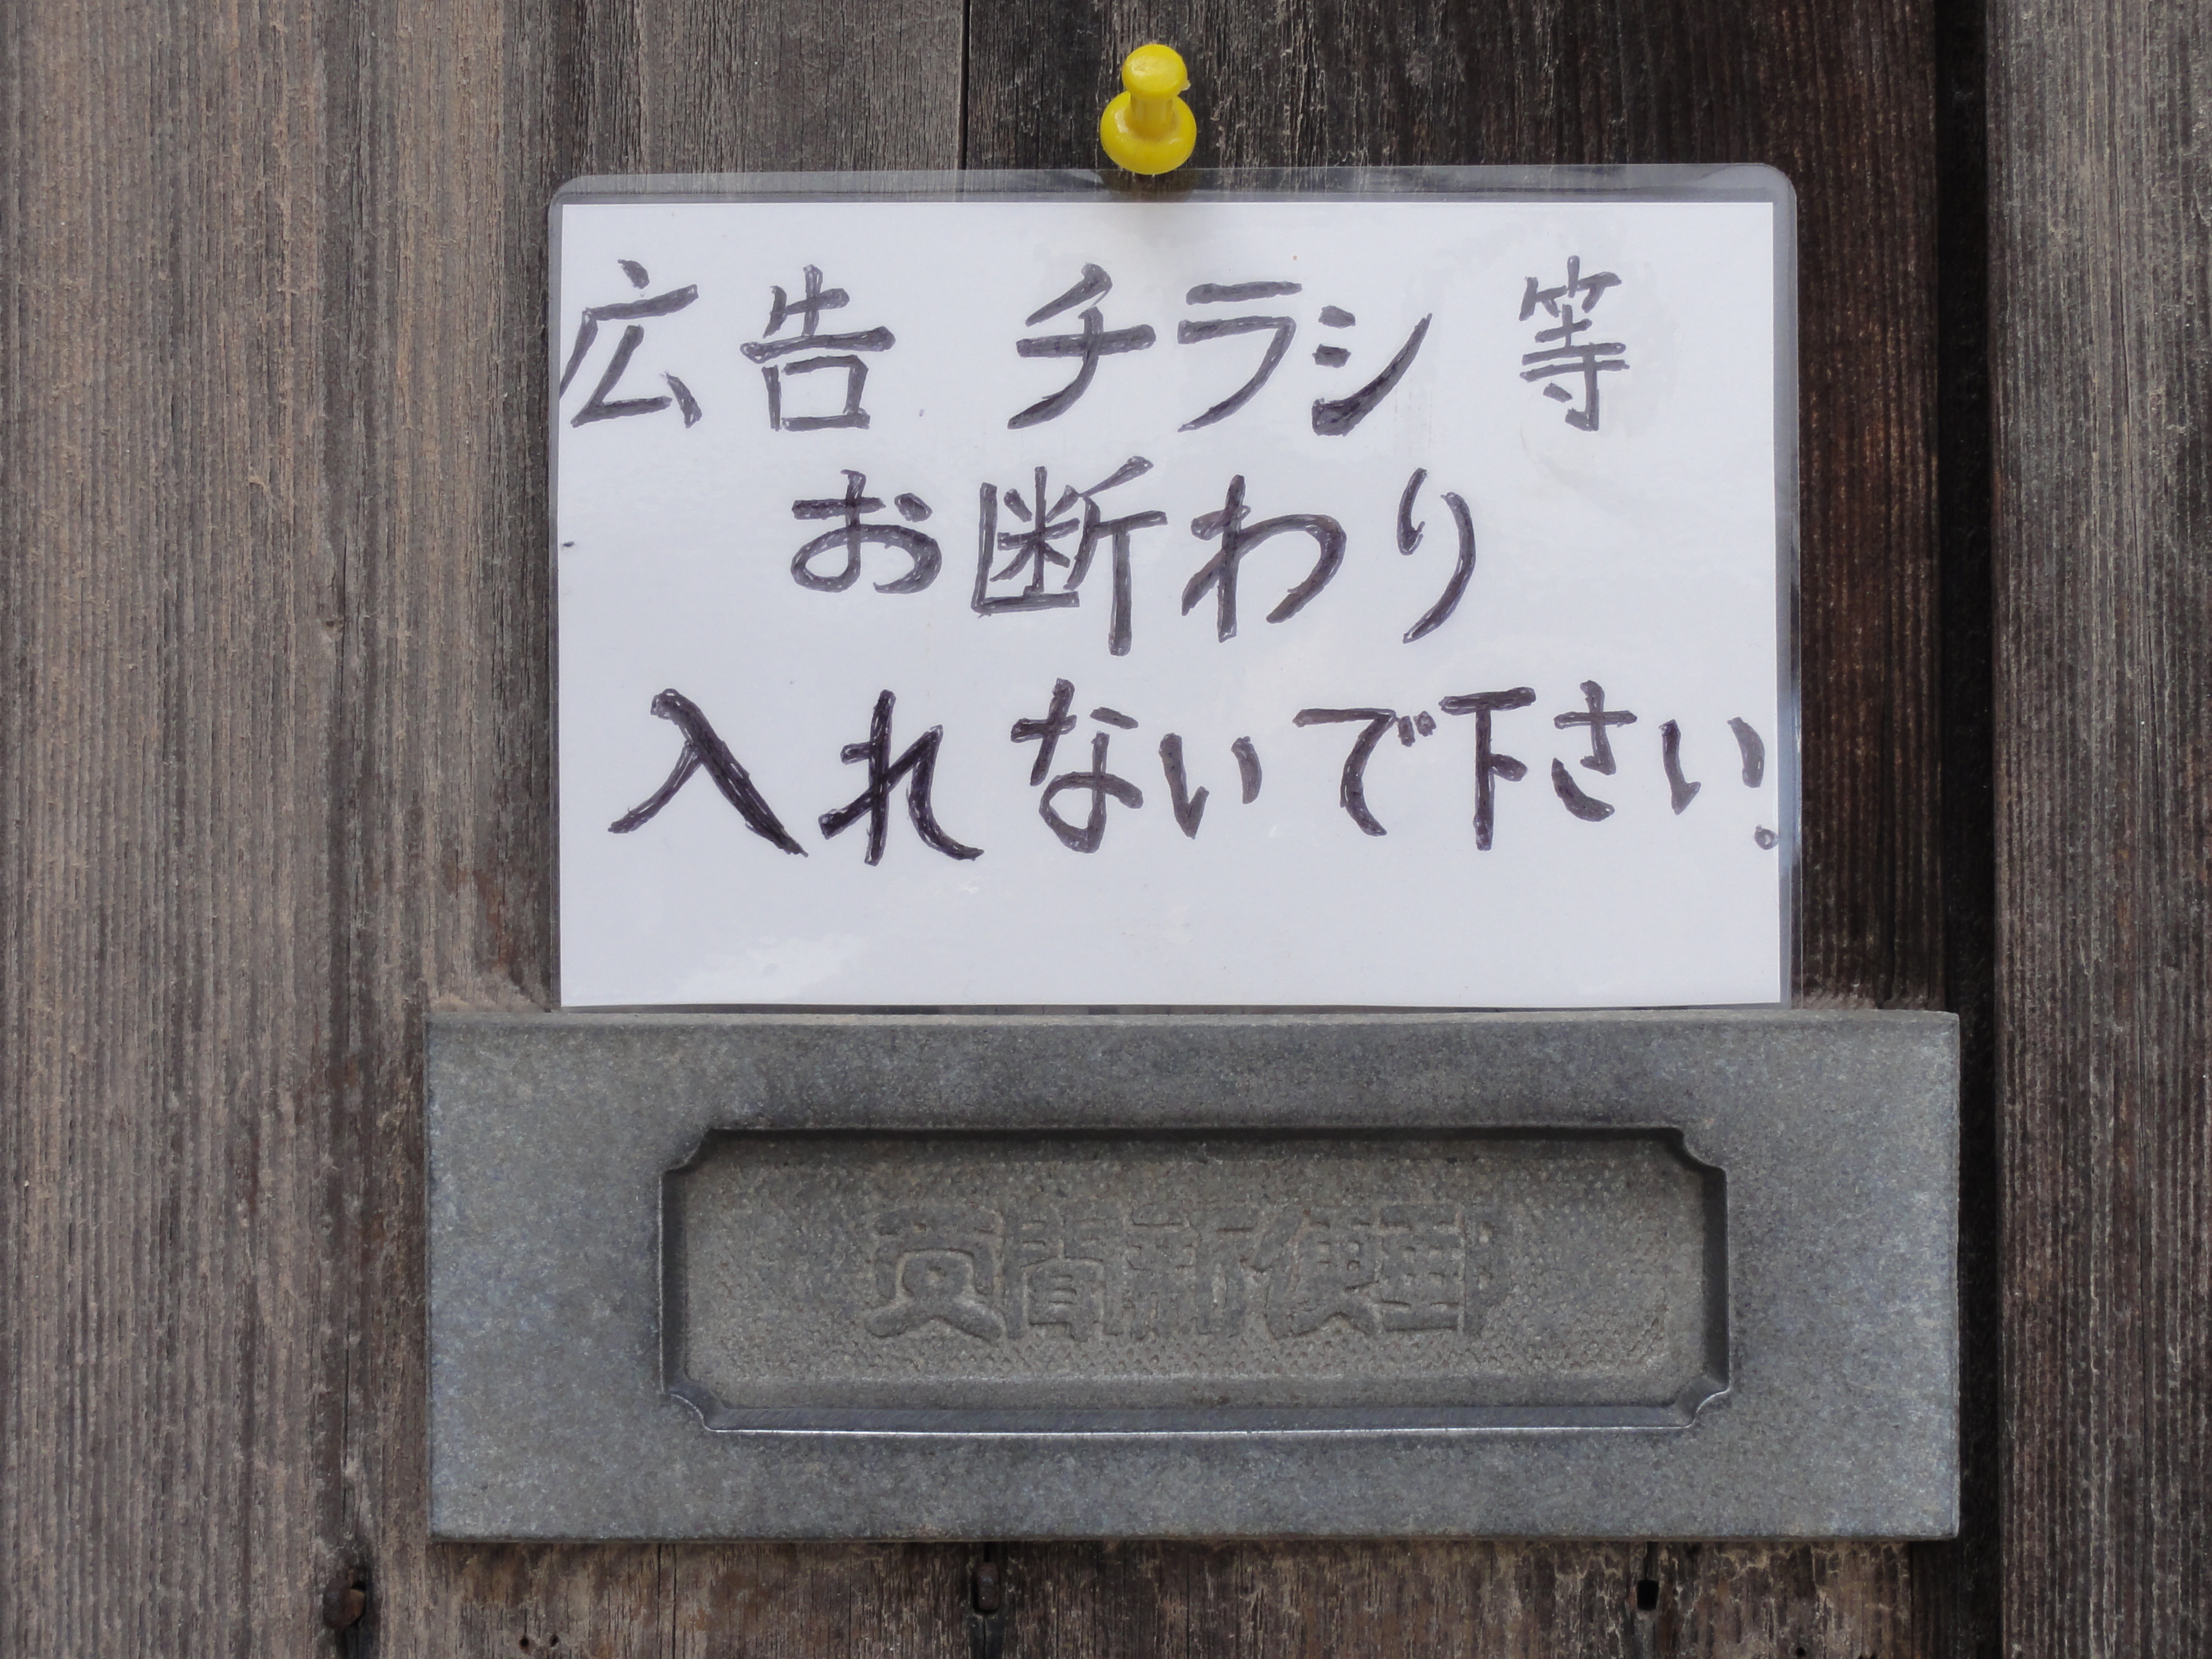 learn-kanji-Japanese-sign-chirashi-278b